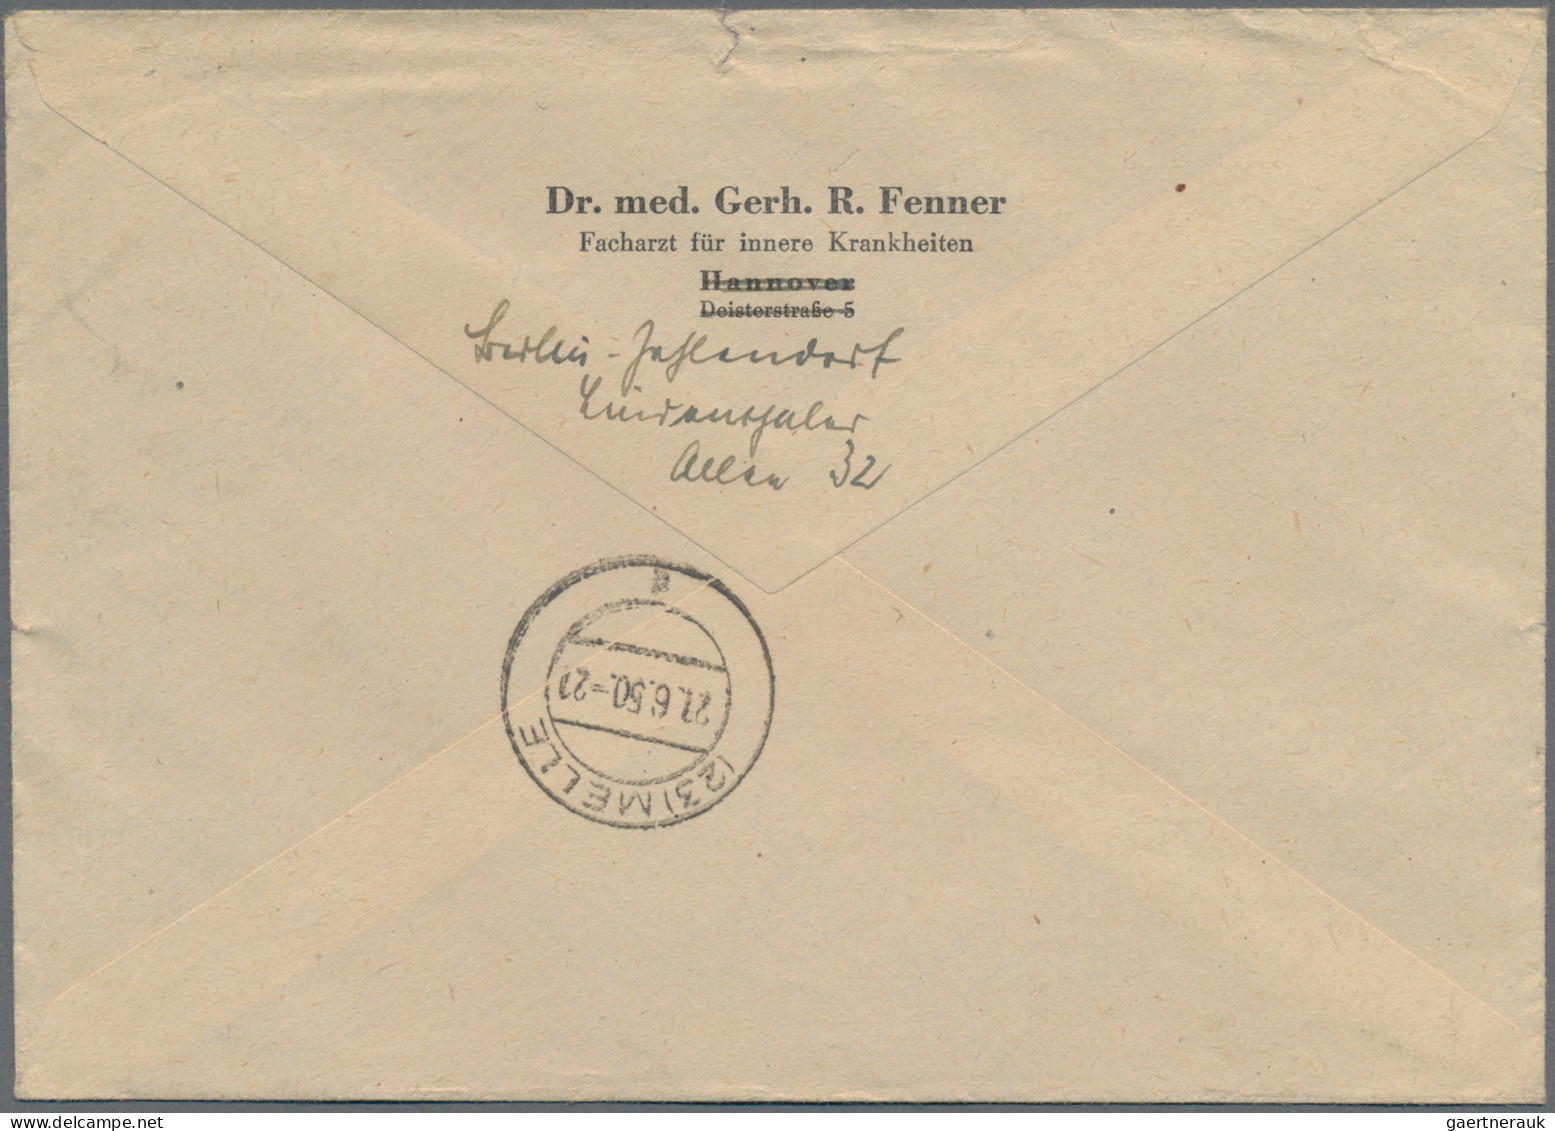 Berlin: 1949, Währungsgeschädigten-Block Mit Den Beiden PF "Bruch Im C In Währun - Lettres & Documents